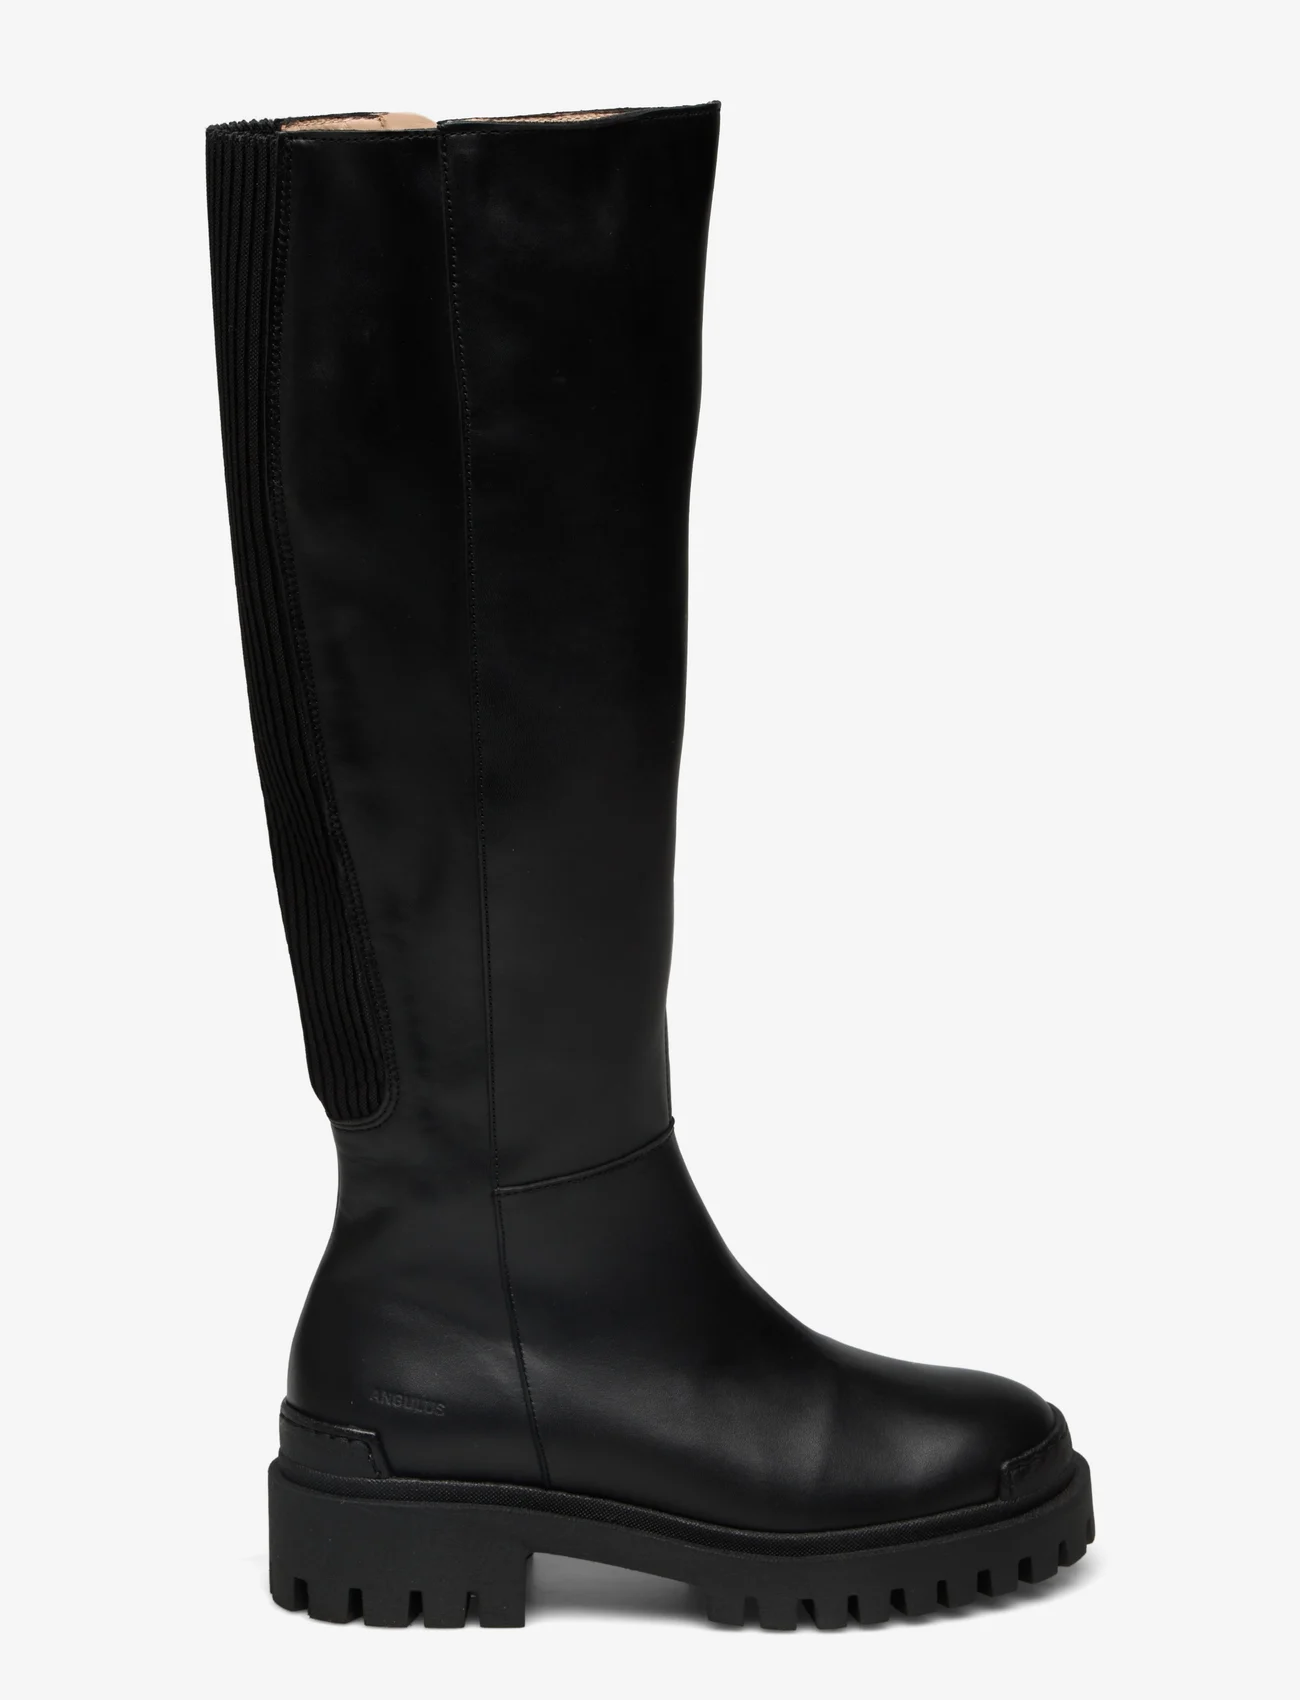 ANGULUS - Boots - flat - pitkävartiset saappaat - 1604/019 black/black - 1